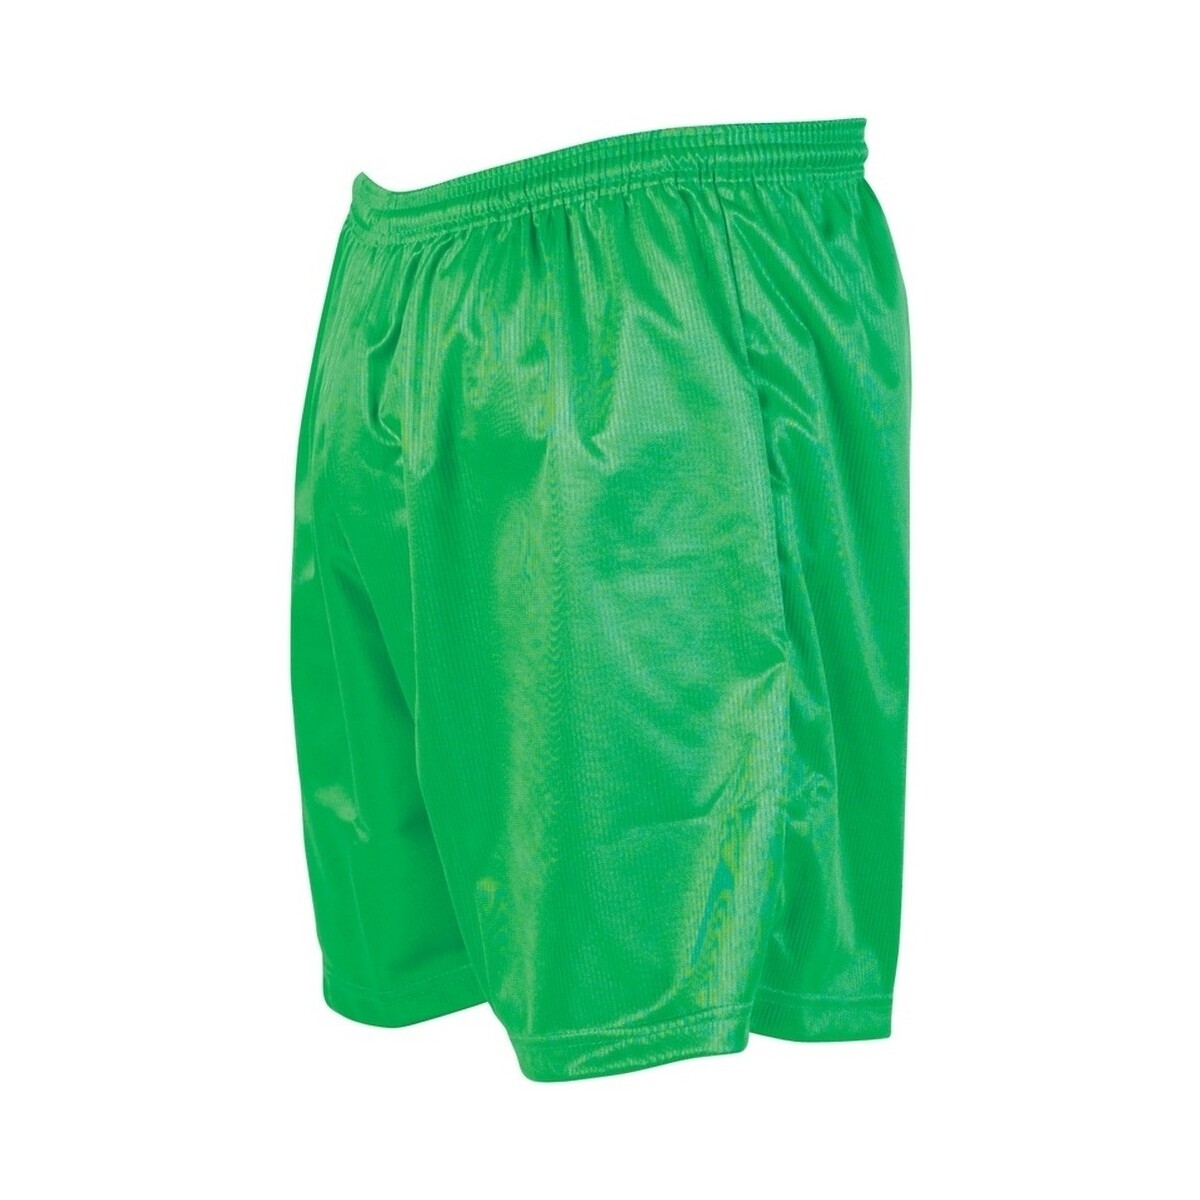 Vêtements Enfant Shorts / Bermudas Precision RD123 Vert